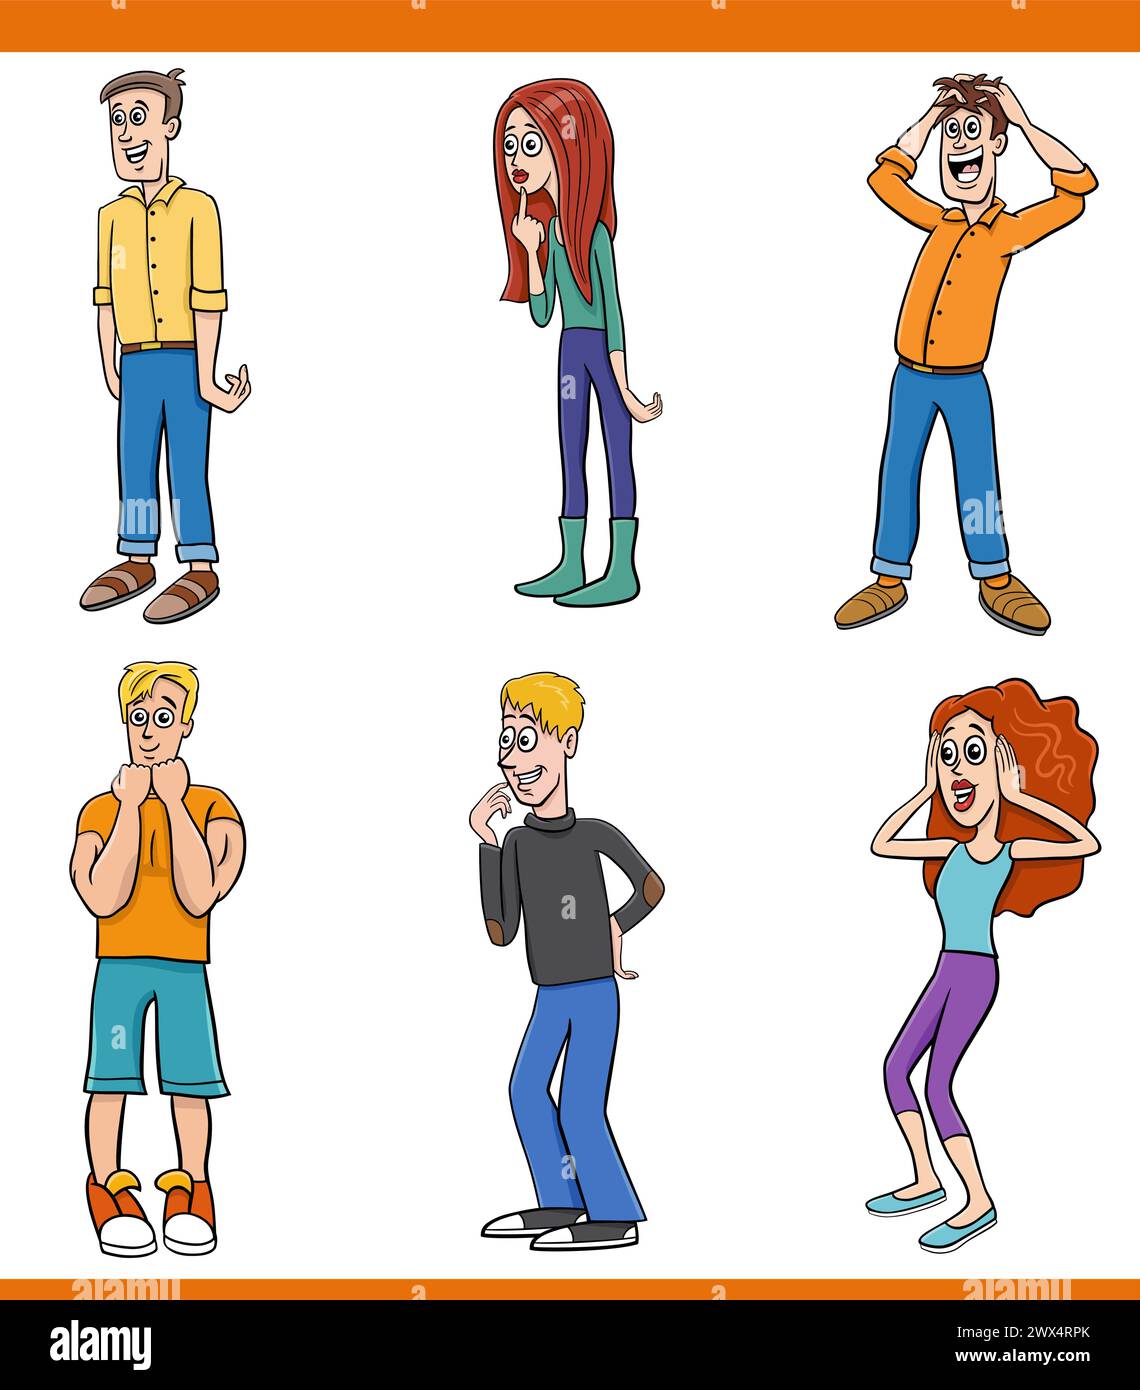 Comic-Illustration von lustigen überraschten jungen Leuten Figuren Set Stock Vektor